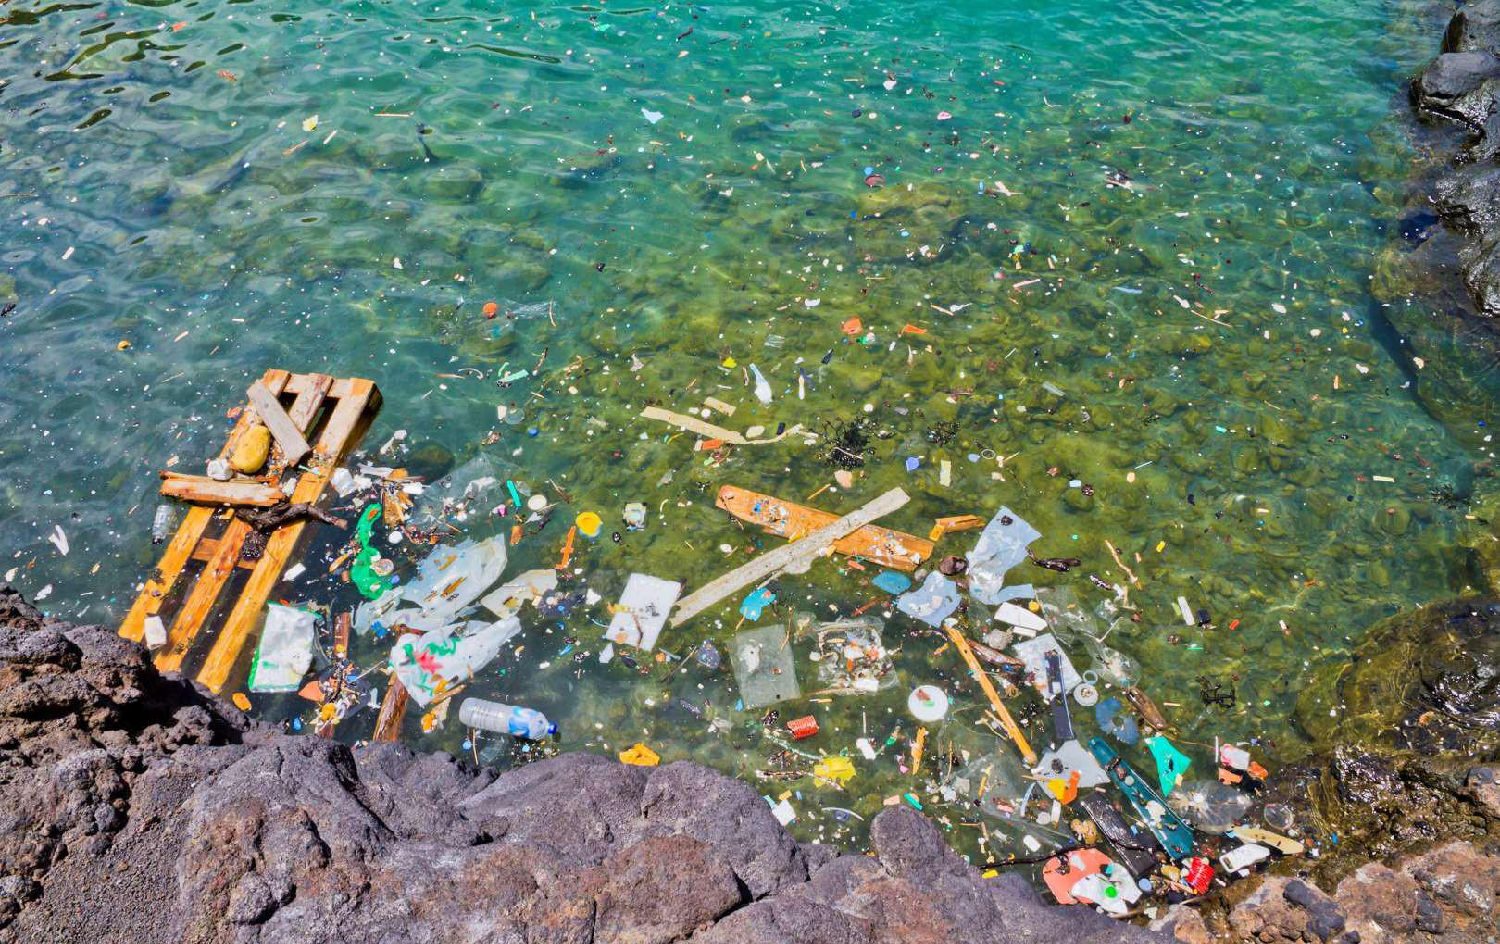 痛心!海洋塑料污染严重 这世界上已几乎没有纯净之海